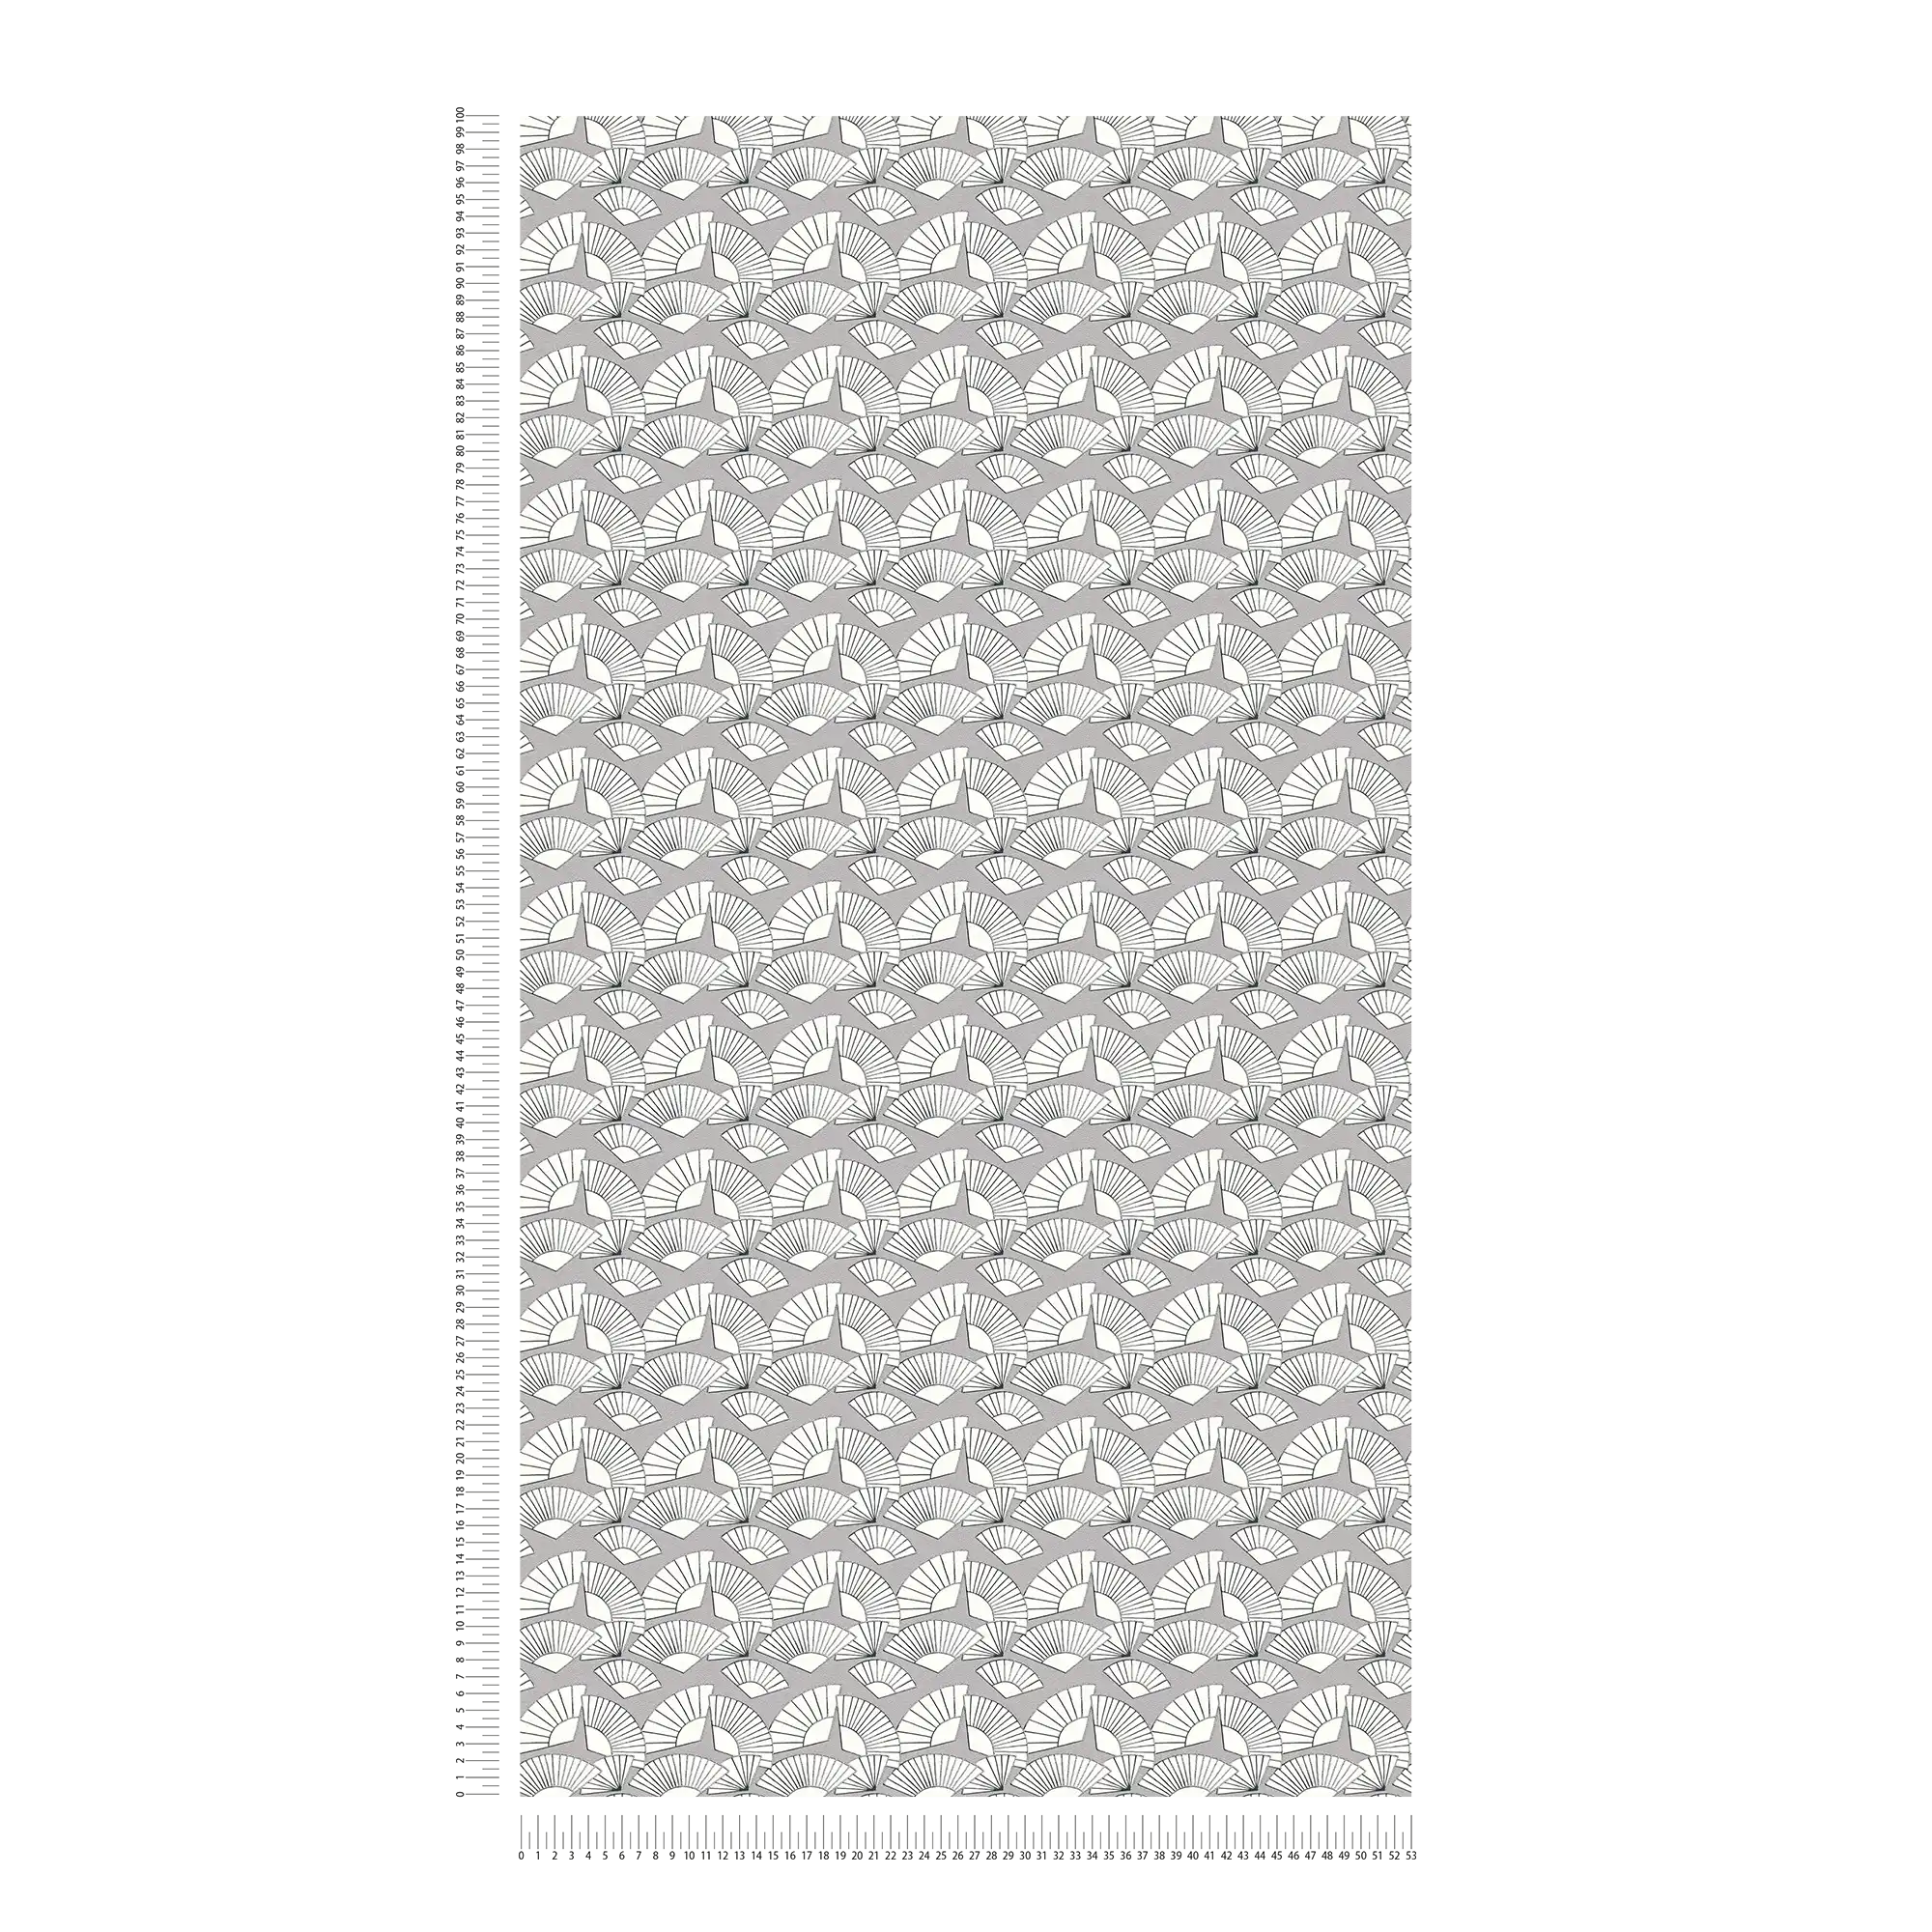             Tapete Karl LAGERFELD Fächer Muster – Metallic, Weiß
        